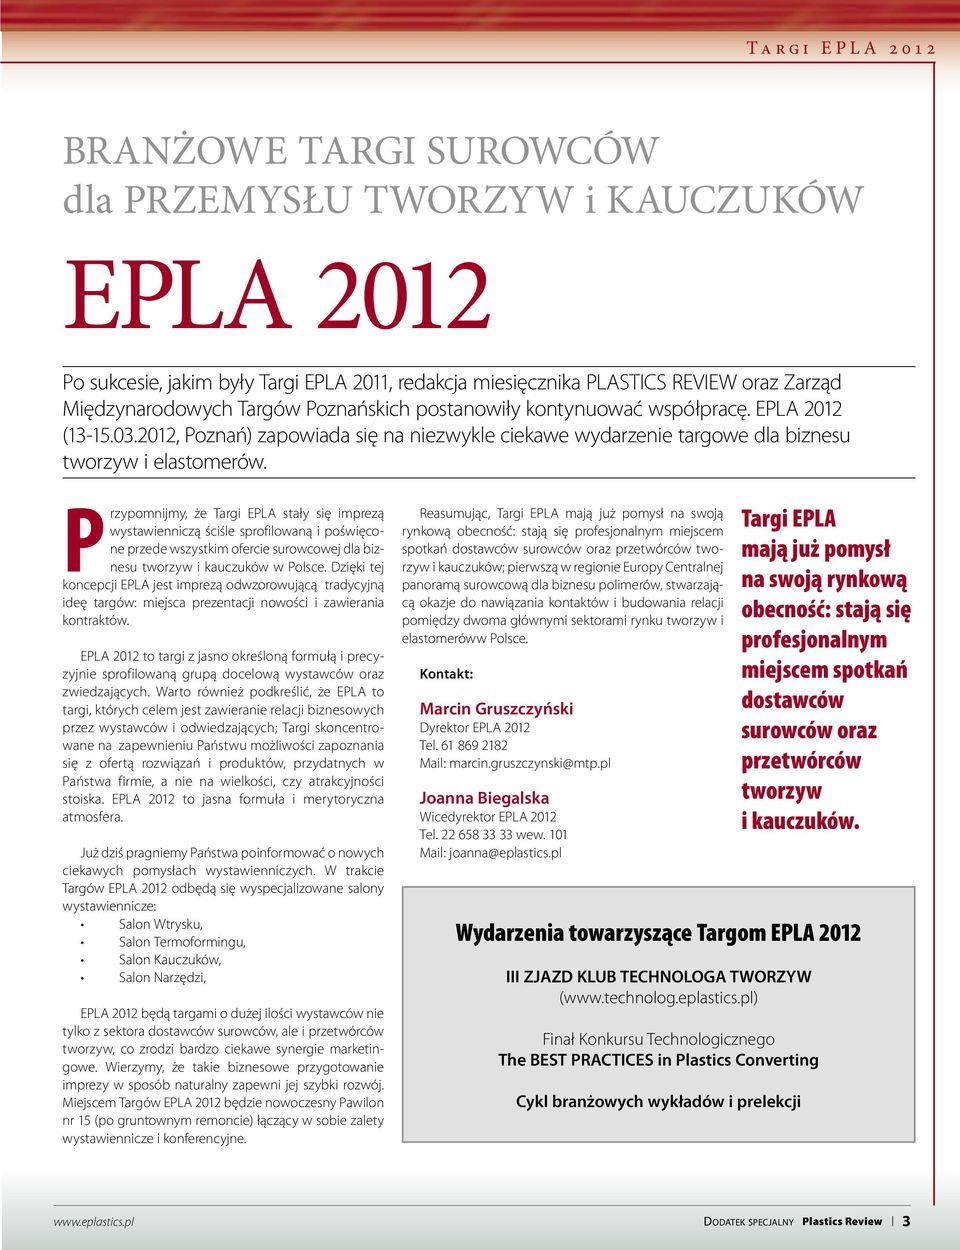 Przypomnijmy, że Targi EPLA stały się imprezą wystawienniczą ściśle sprofilowaną i poświęcone przede wszystkim ofercie surowcowej dla biznesu tworzyw i kauczuków w Polsce.